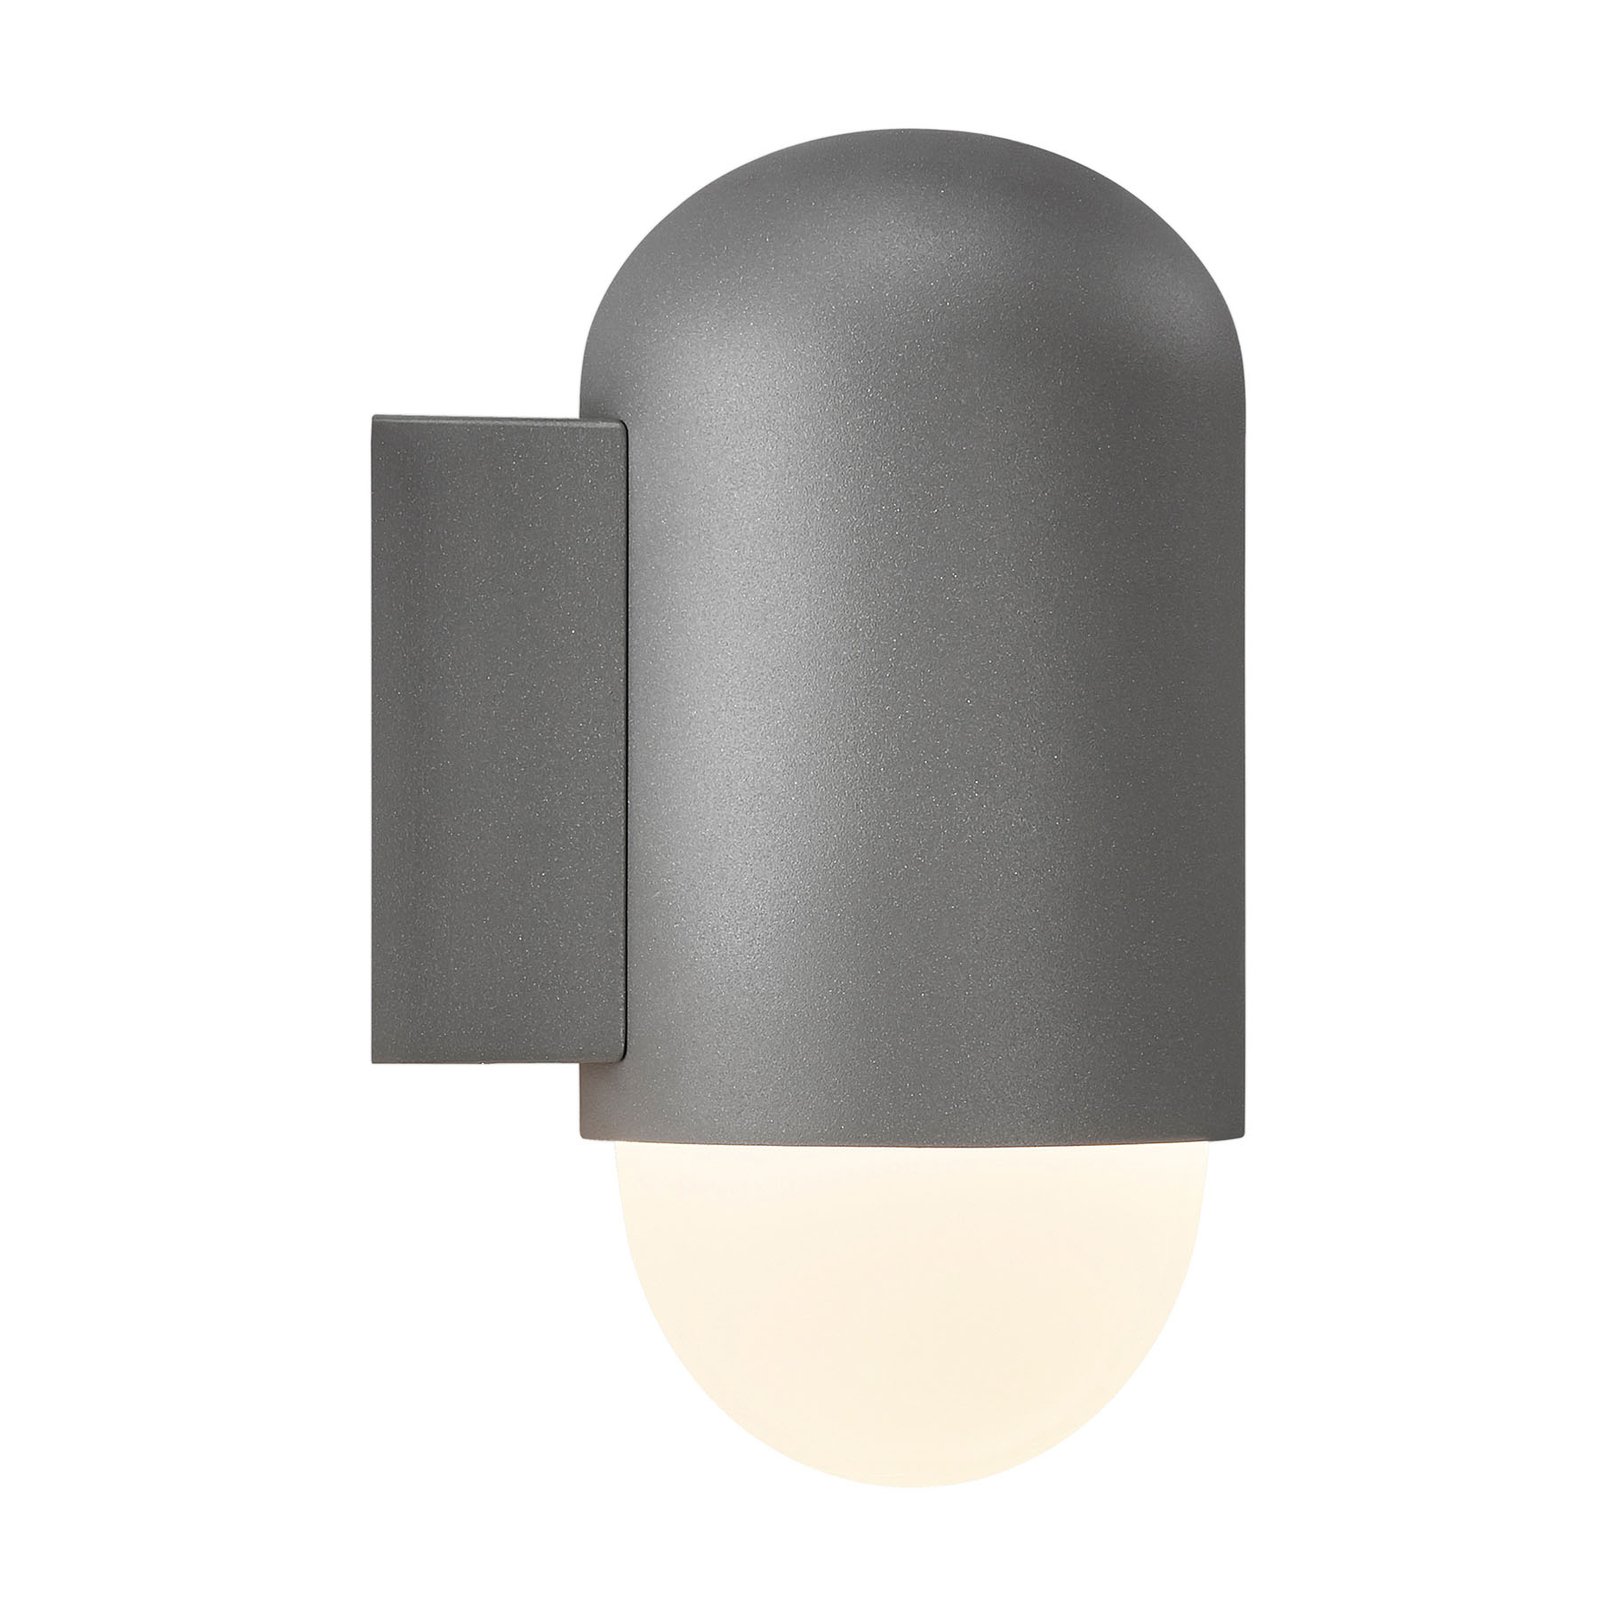 Venkovní nástěnná lampa Heka, antracitově šedá, hliník, výška 21,6 cm